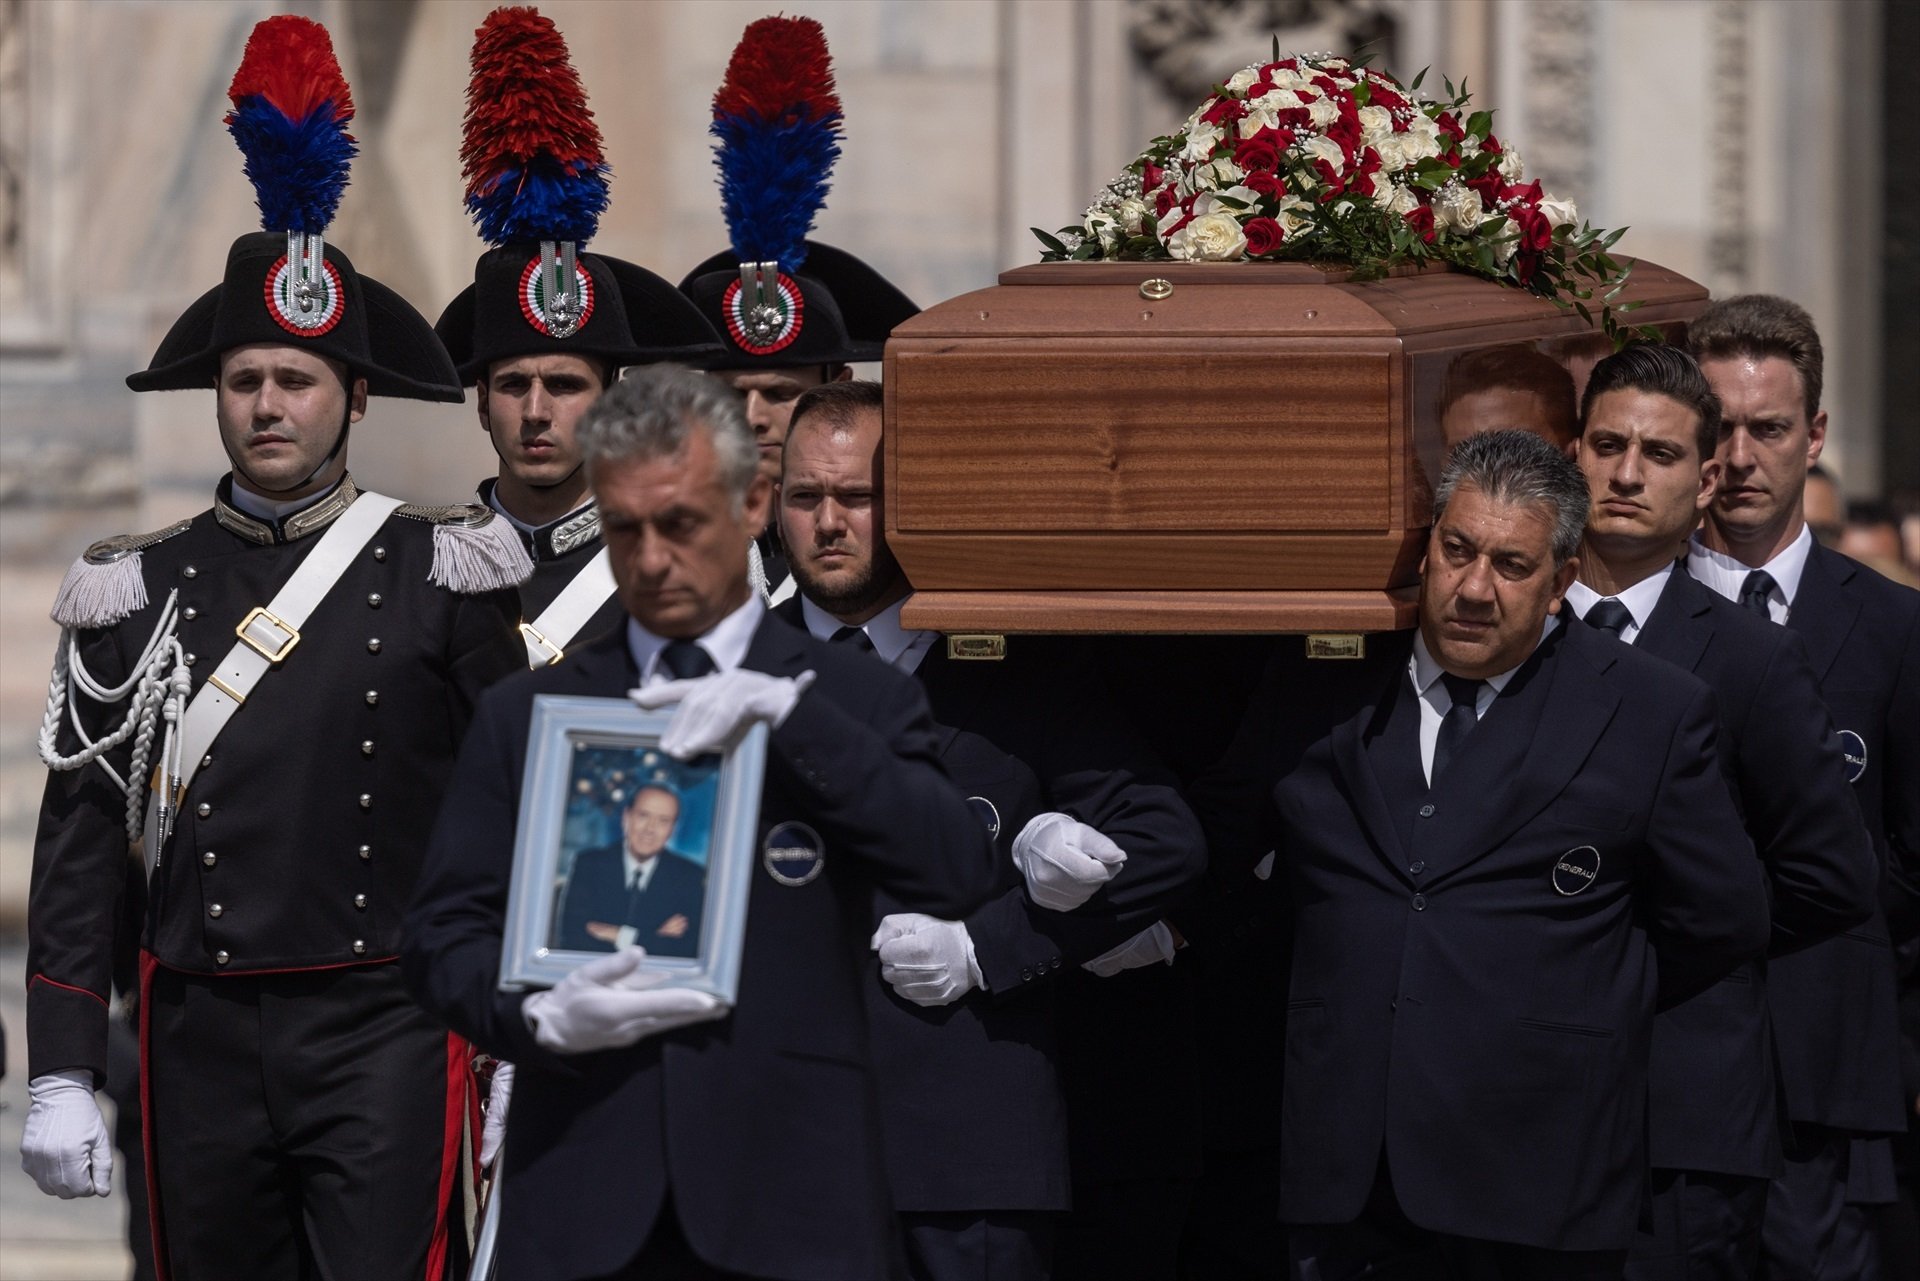 El funeral de Berlusconi, la Champions del Pep i més: la volta al món en 15 fotos